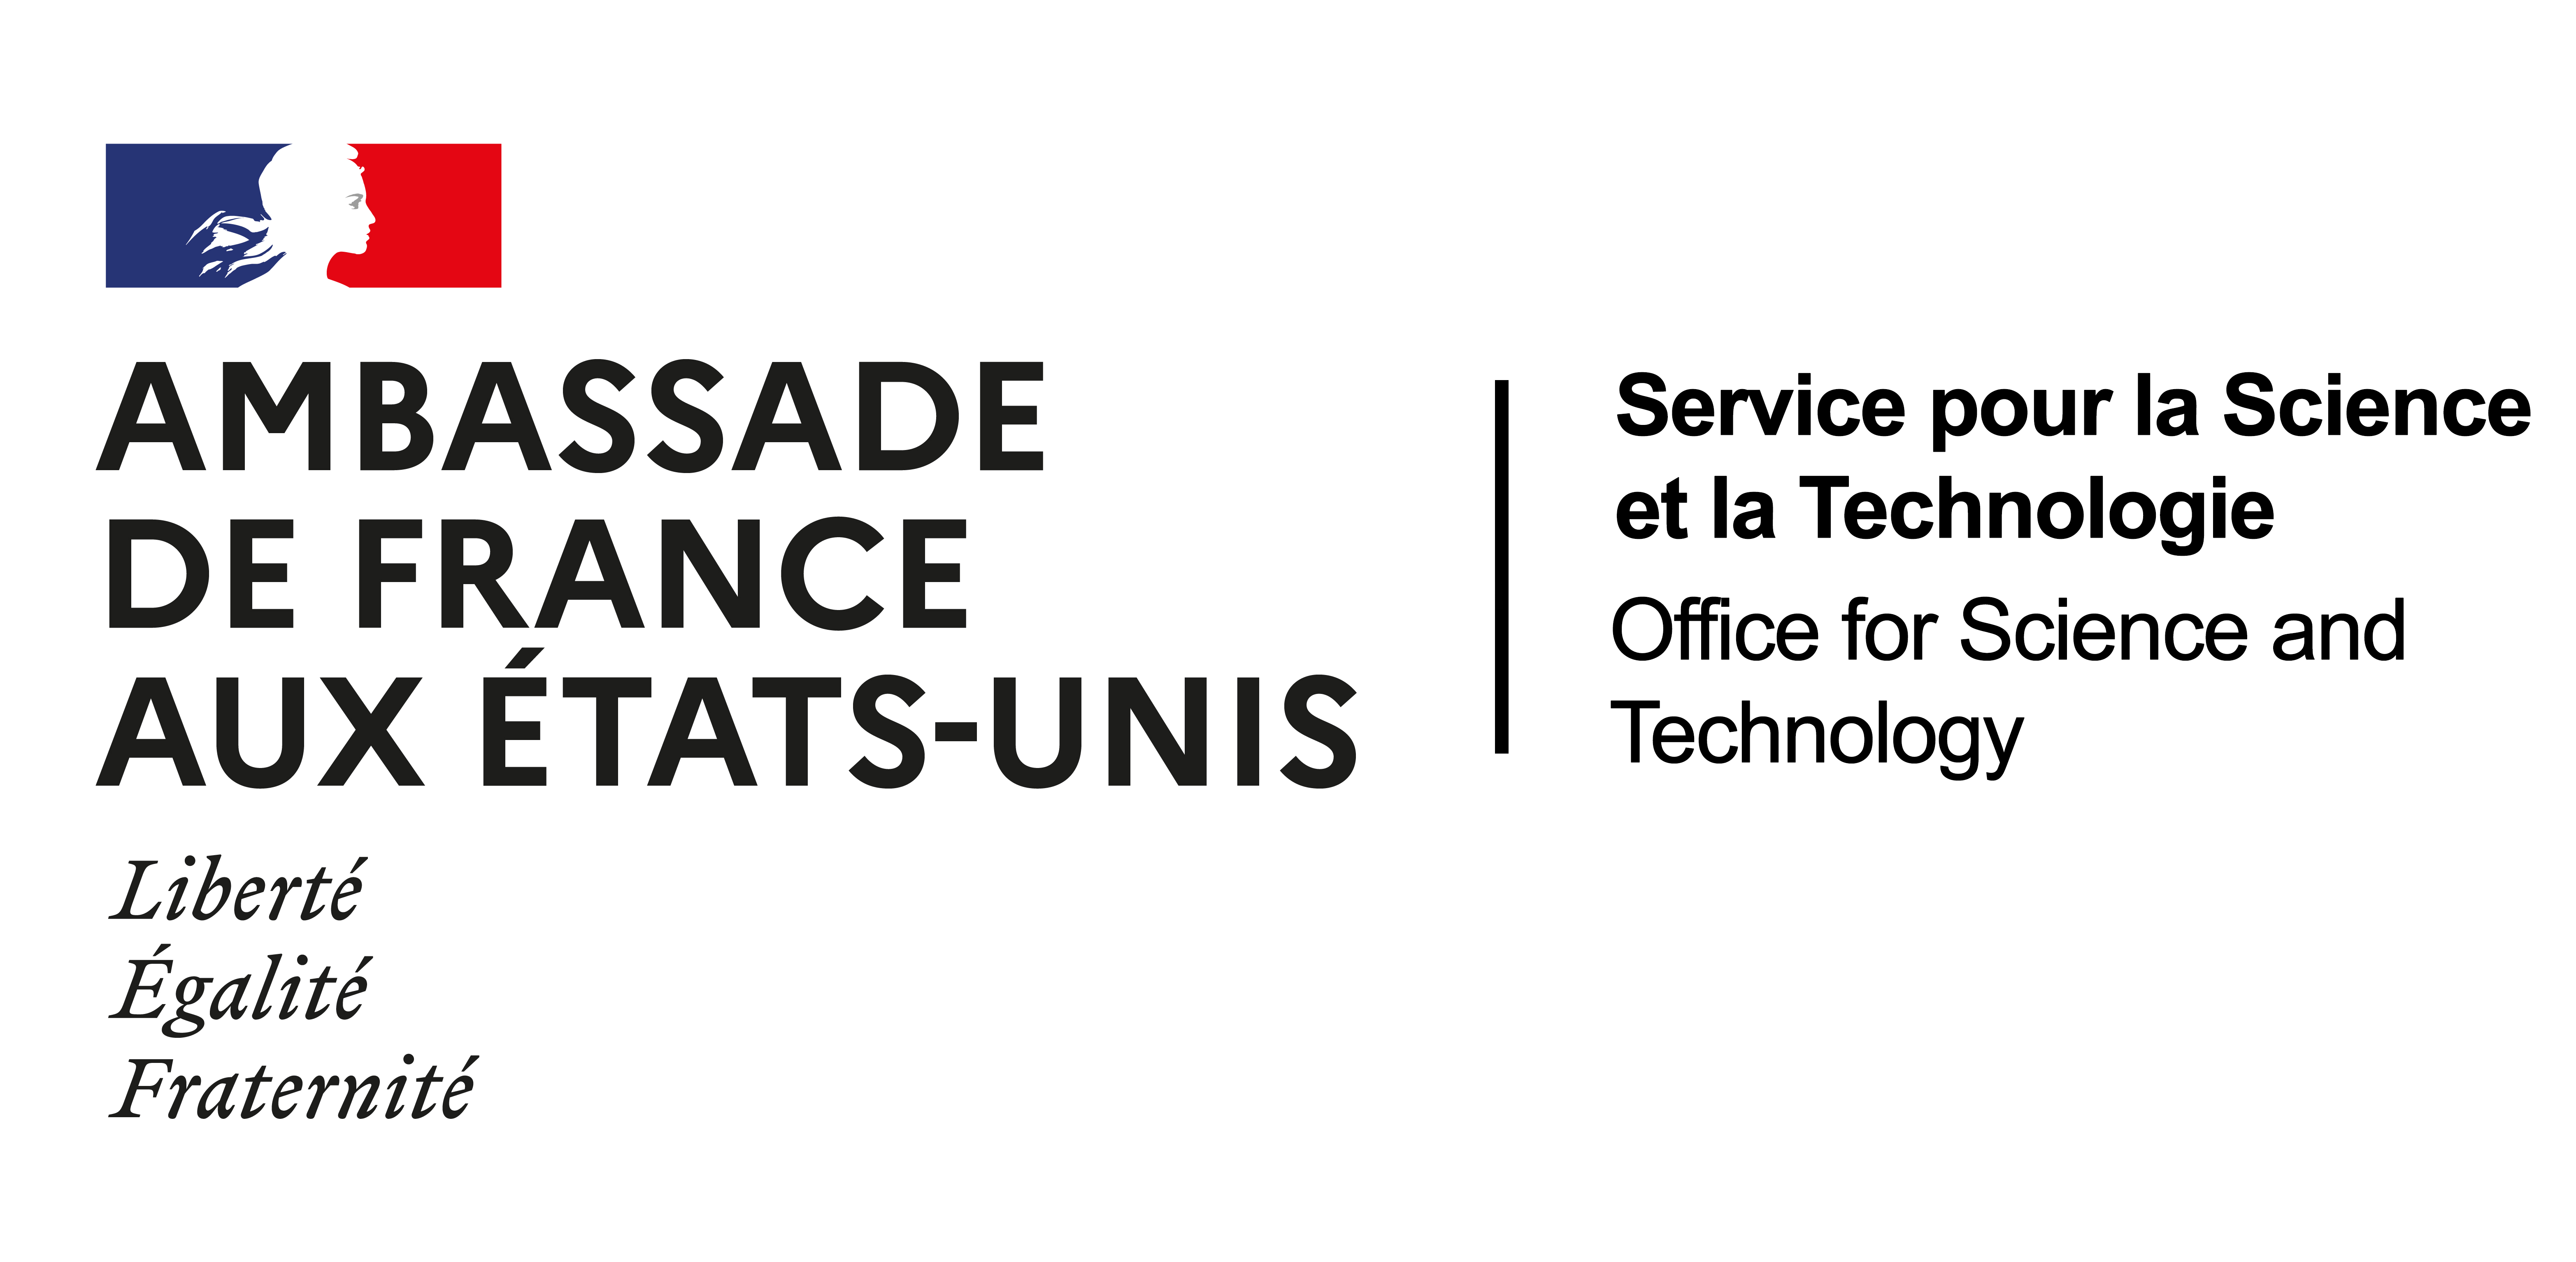 Ambassade de France aux Etats-Unis - Service pour la science et la Technologie